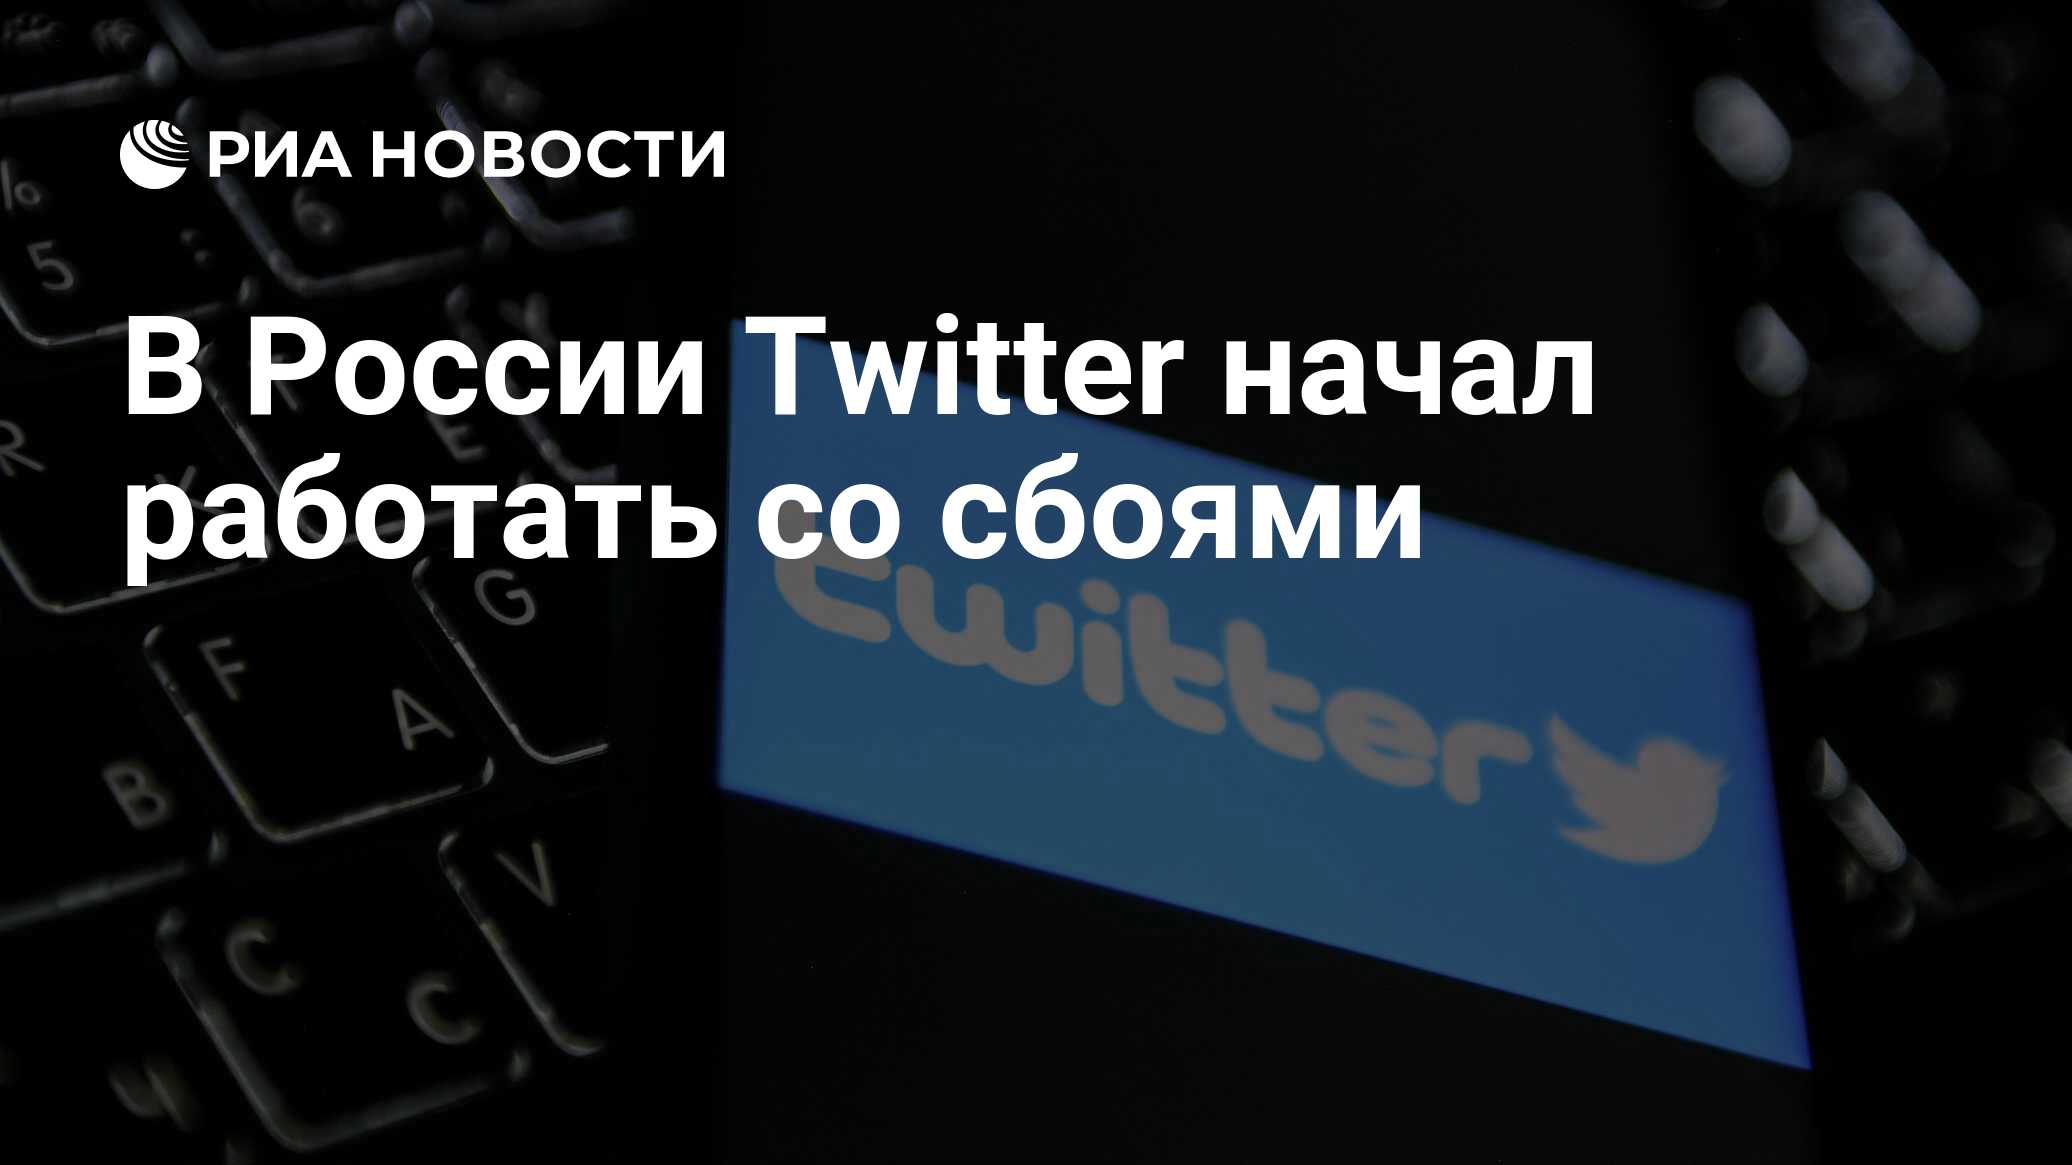 Твиттер в России работает. Телеграмм сегодня не работает 27 февраля